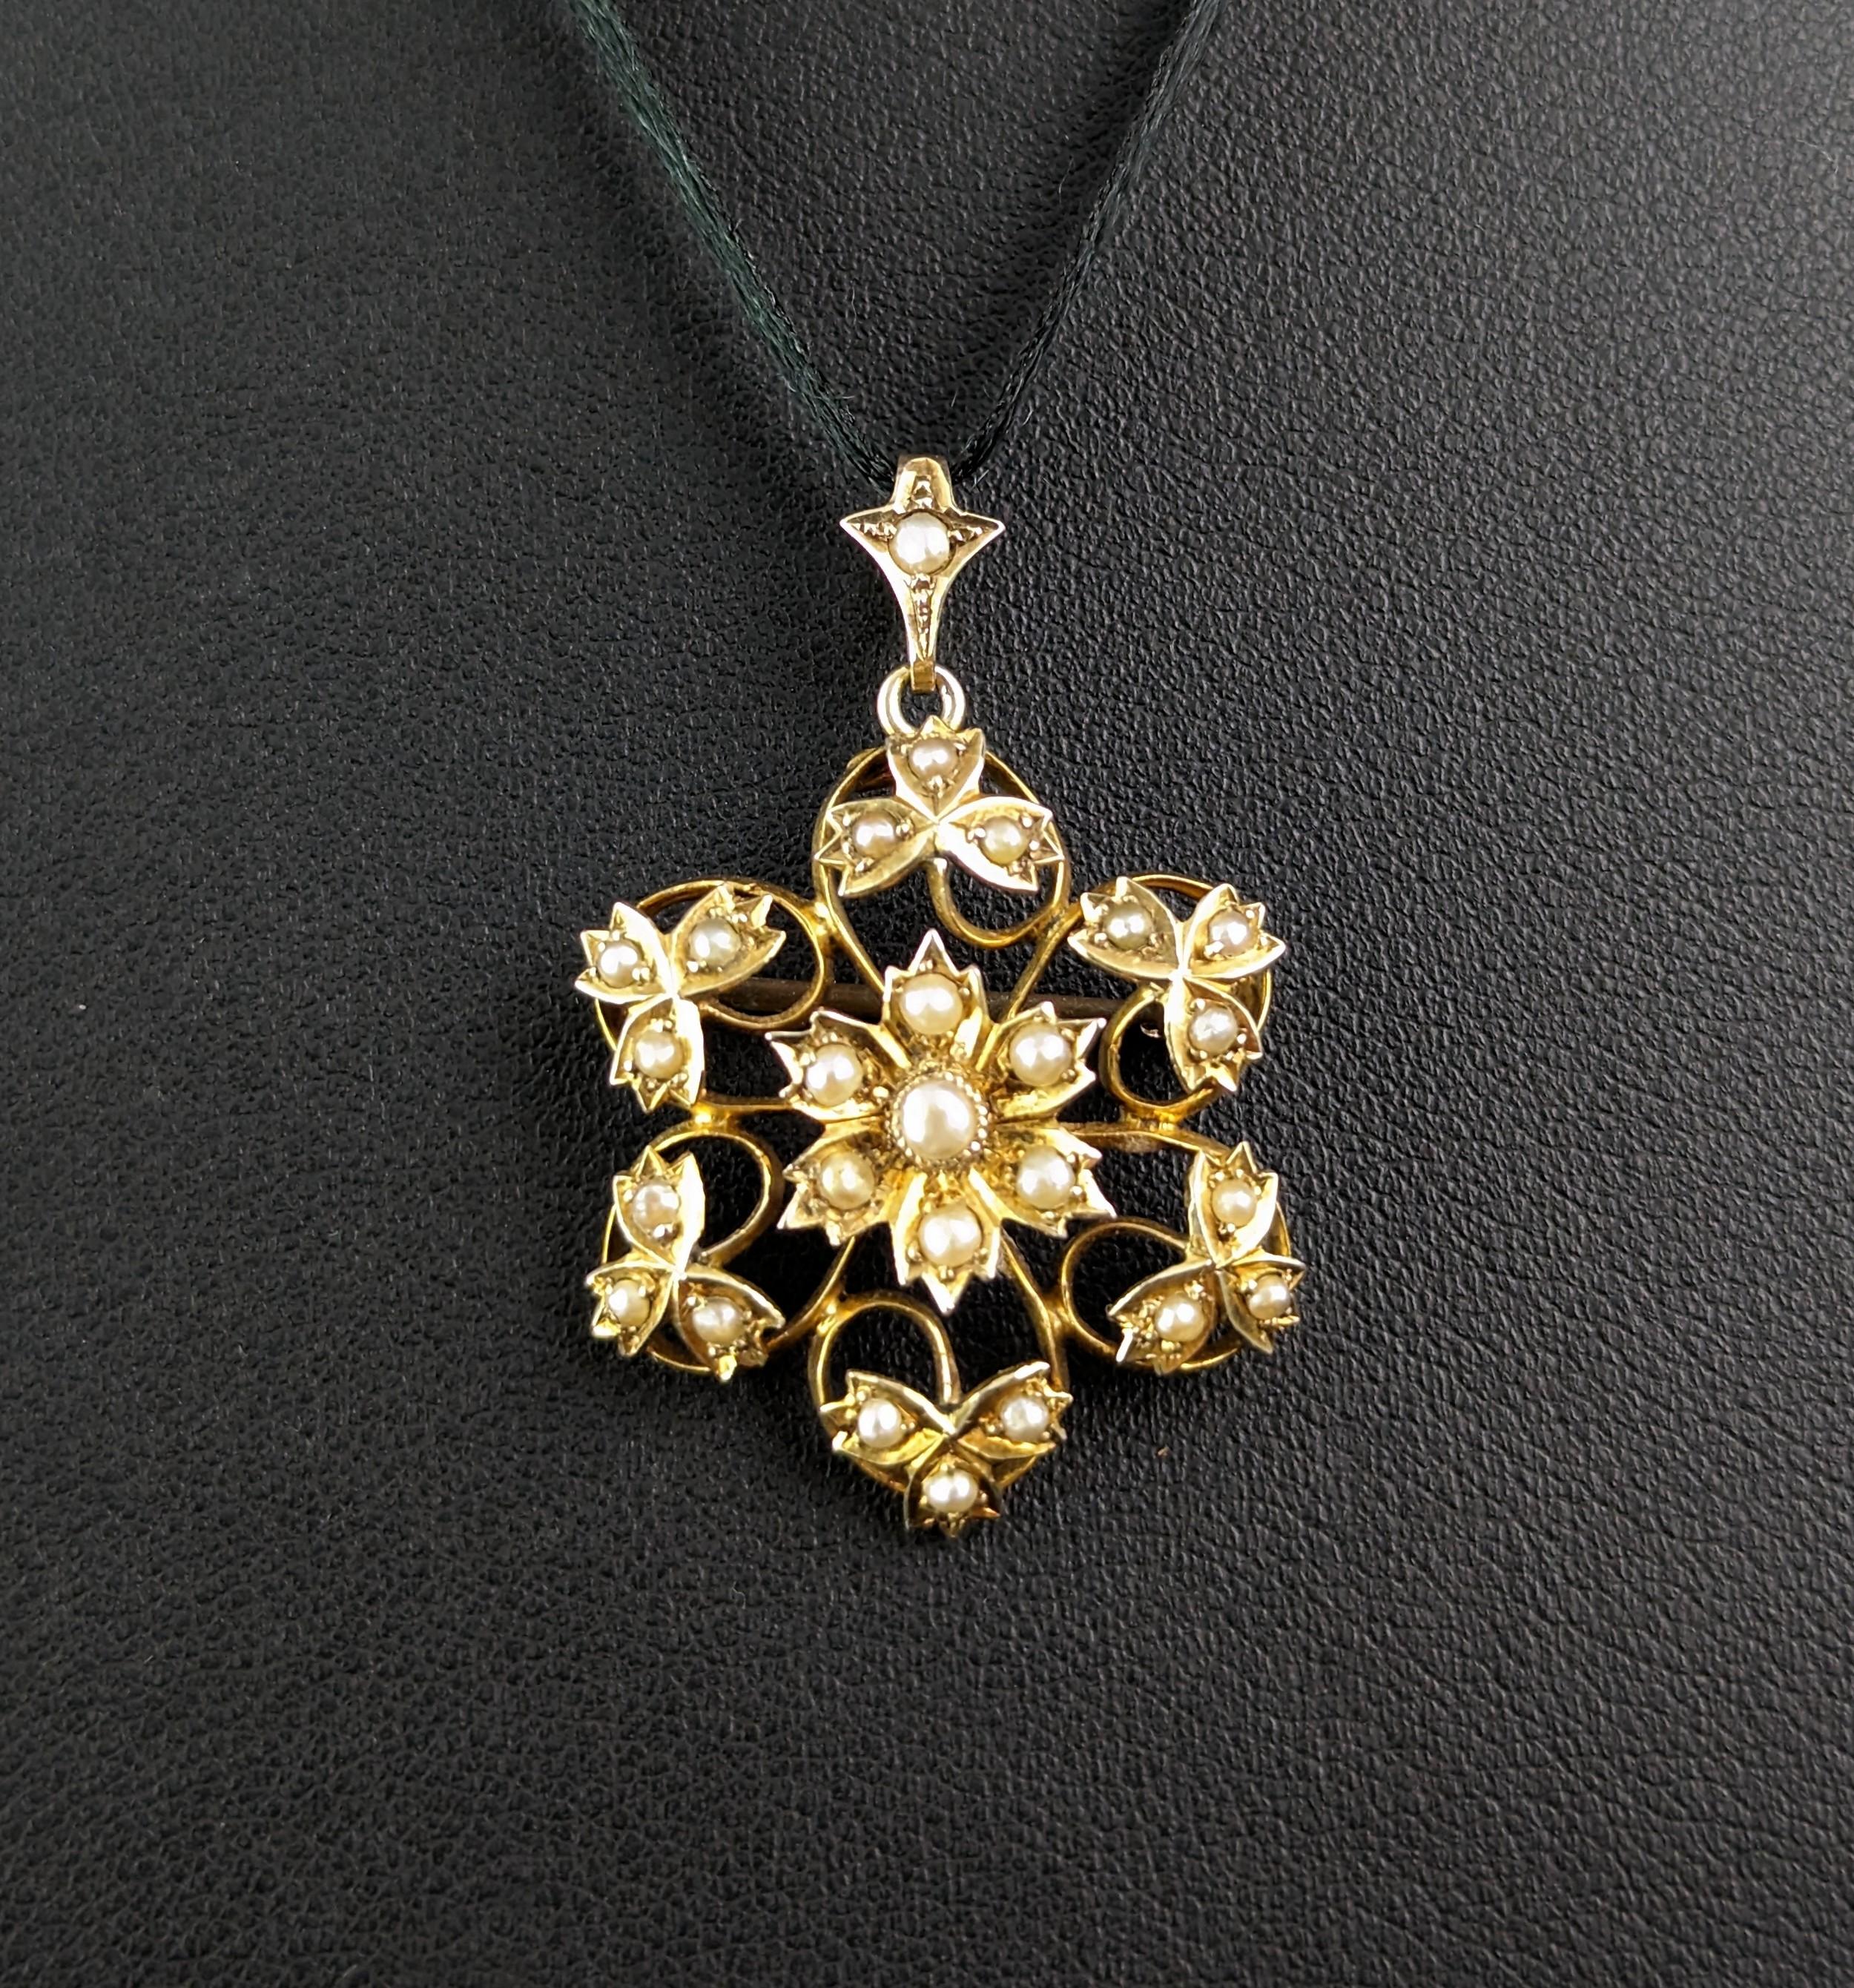 Antique Art Nouveau pearl flower pendant brooch, 9k yellow gold  6